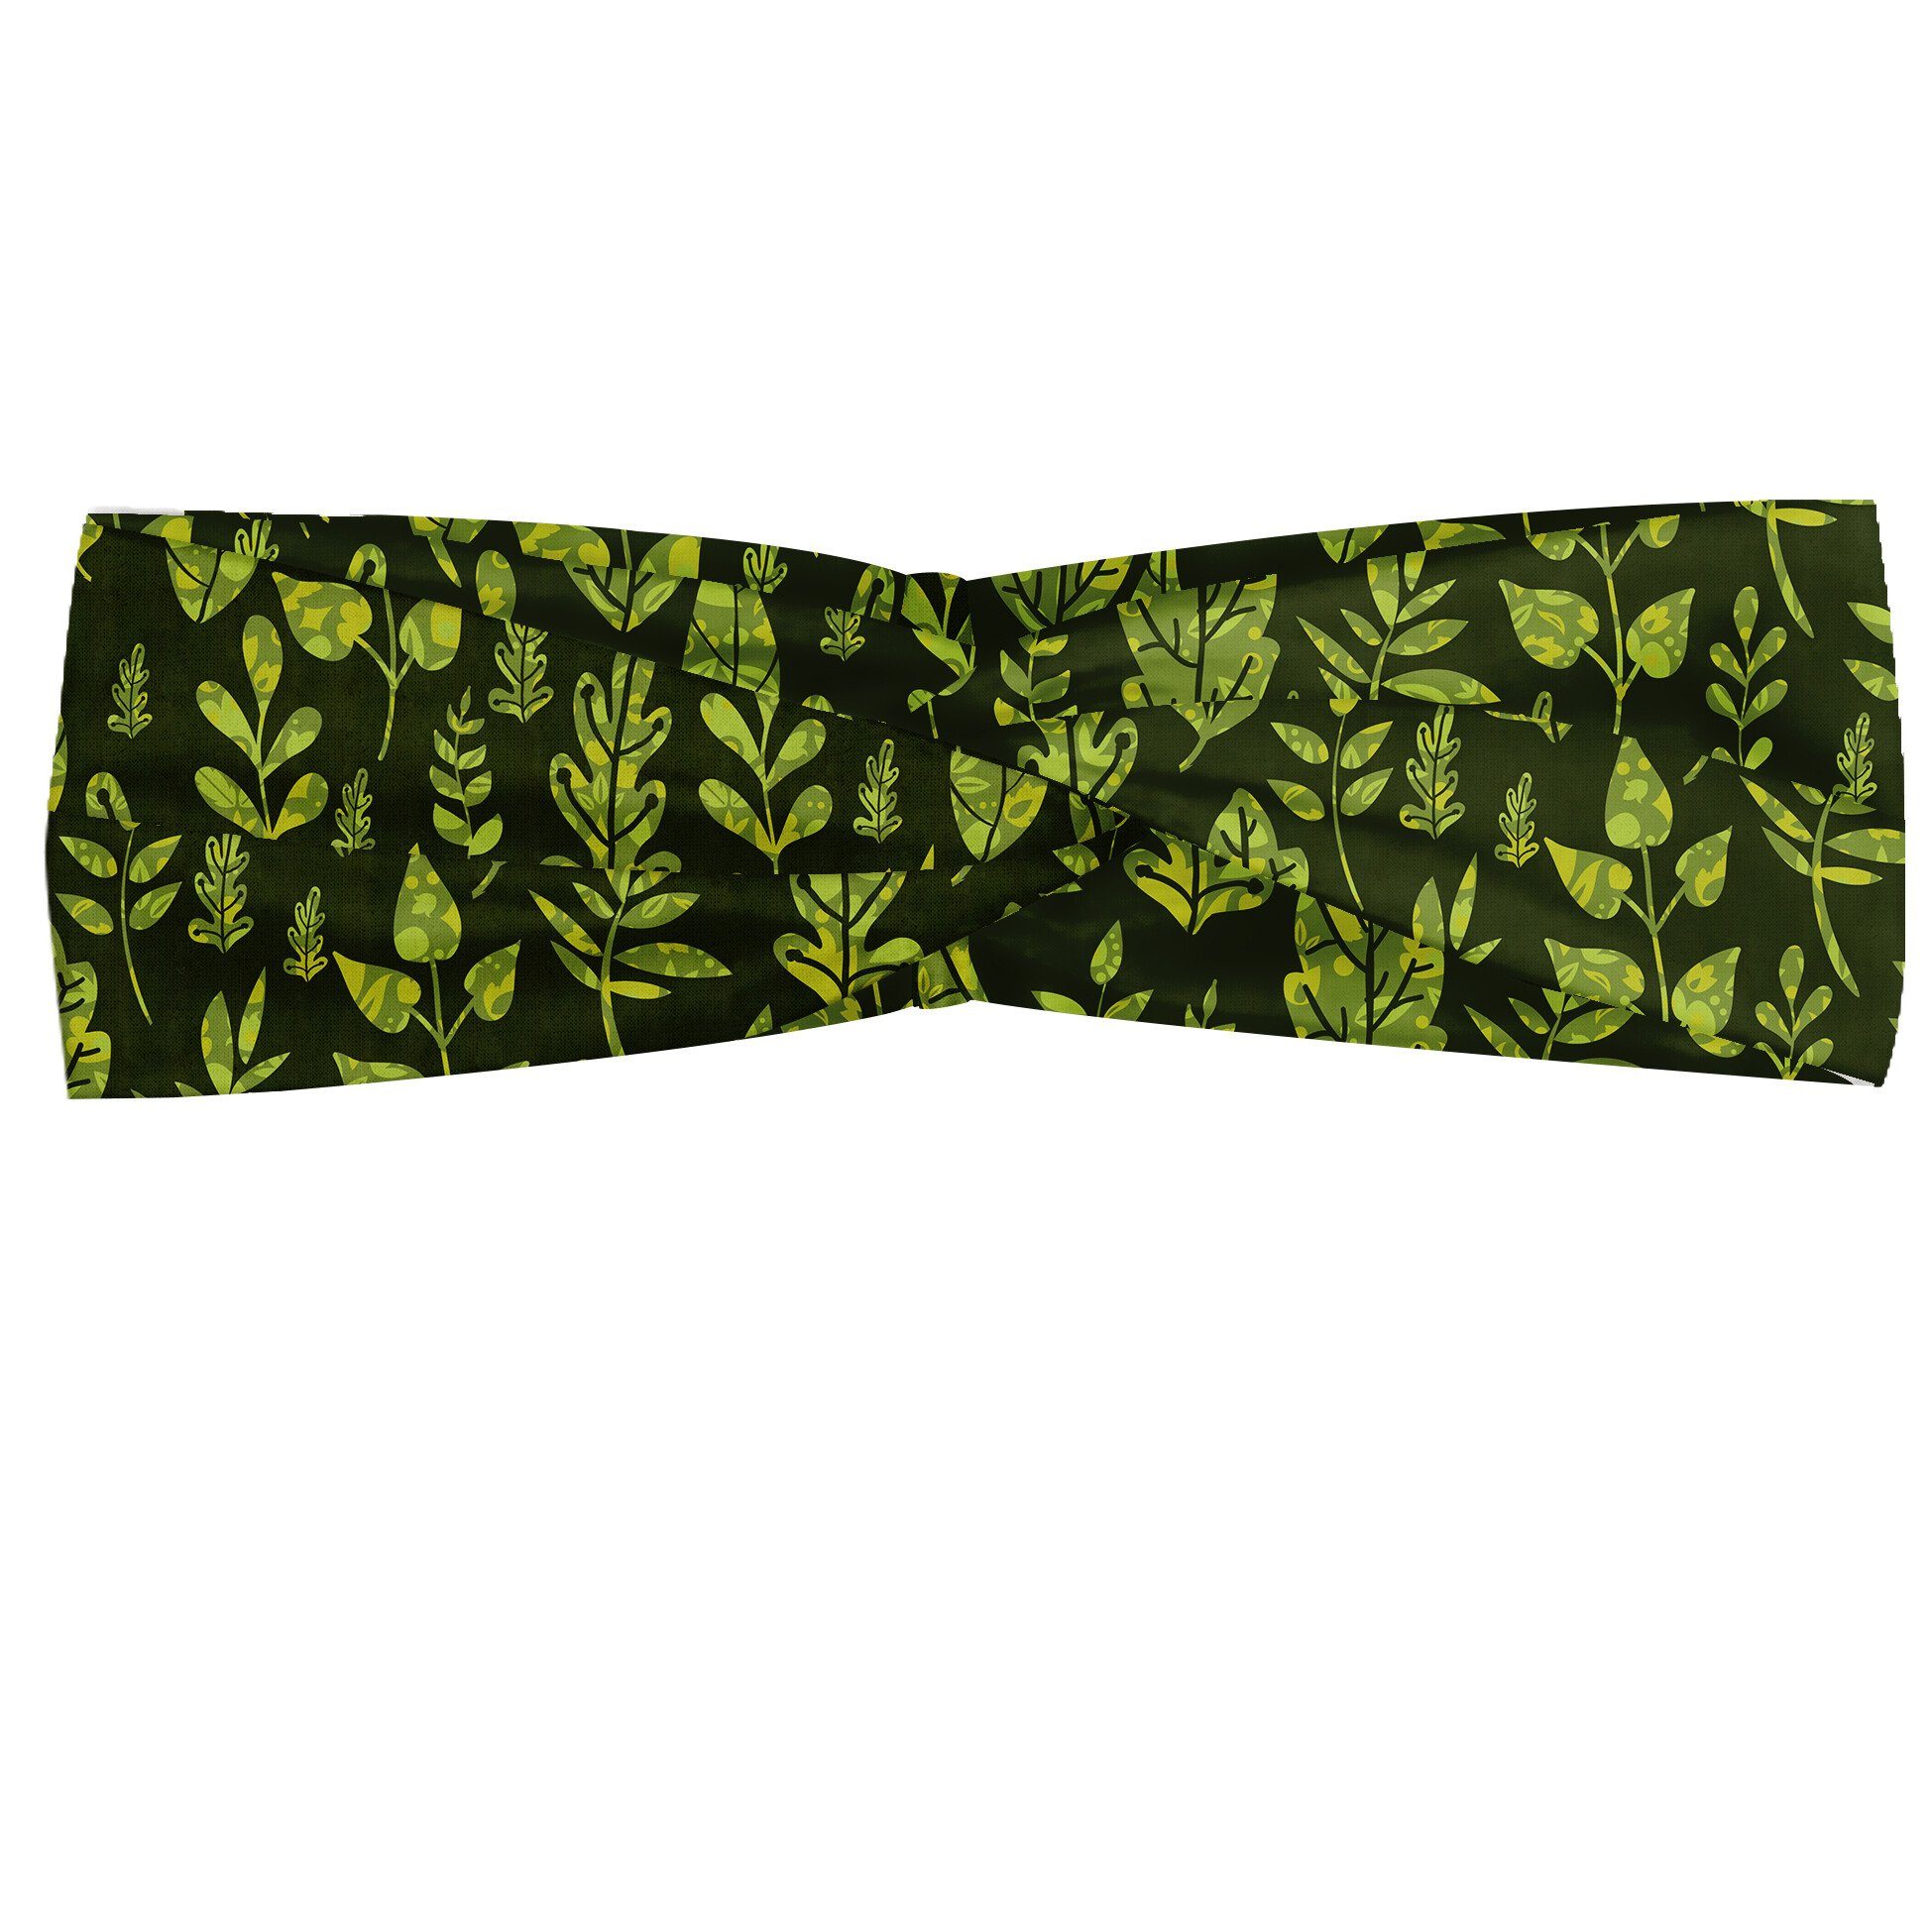 Abakuhaus Stirnband Elastisch und Angenehme alltags accessories Salbei Patterned Green Leaves